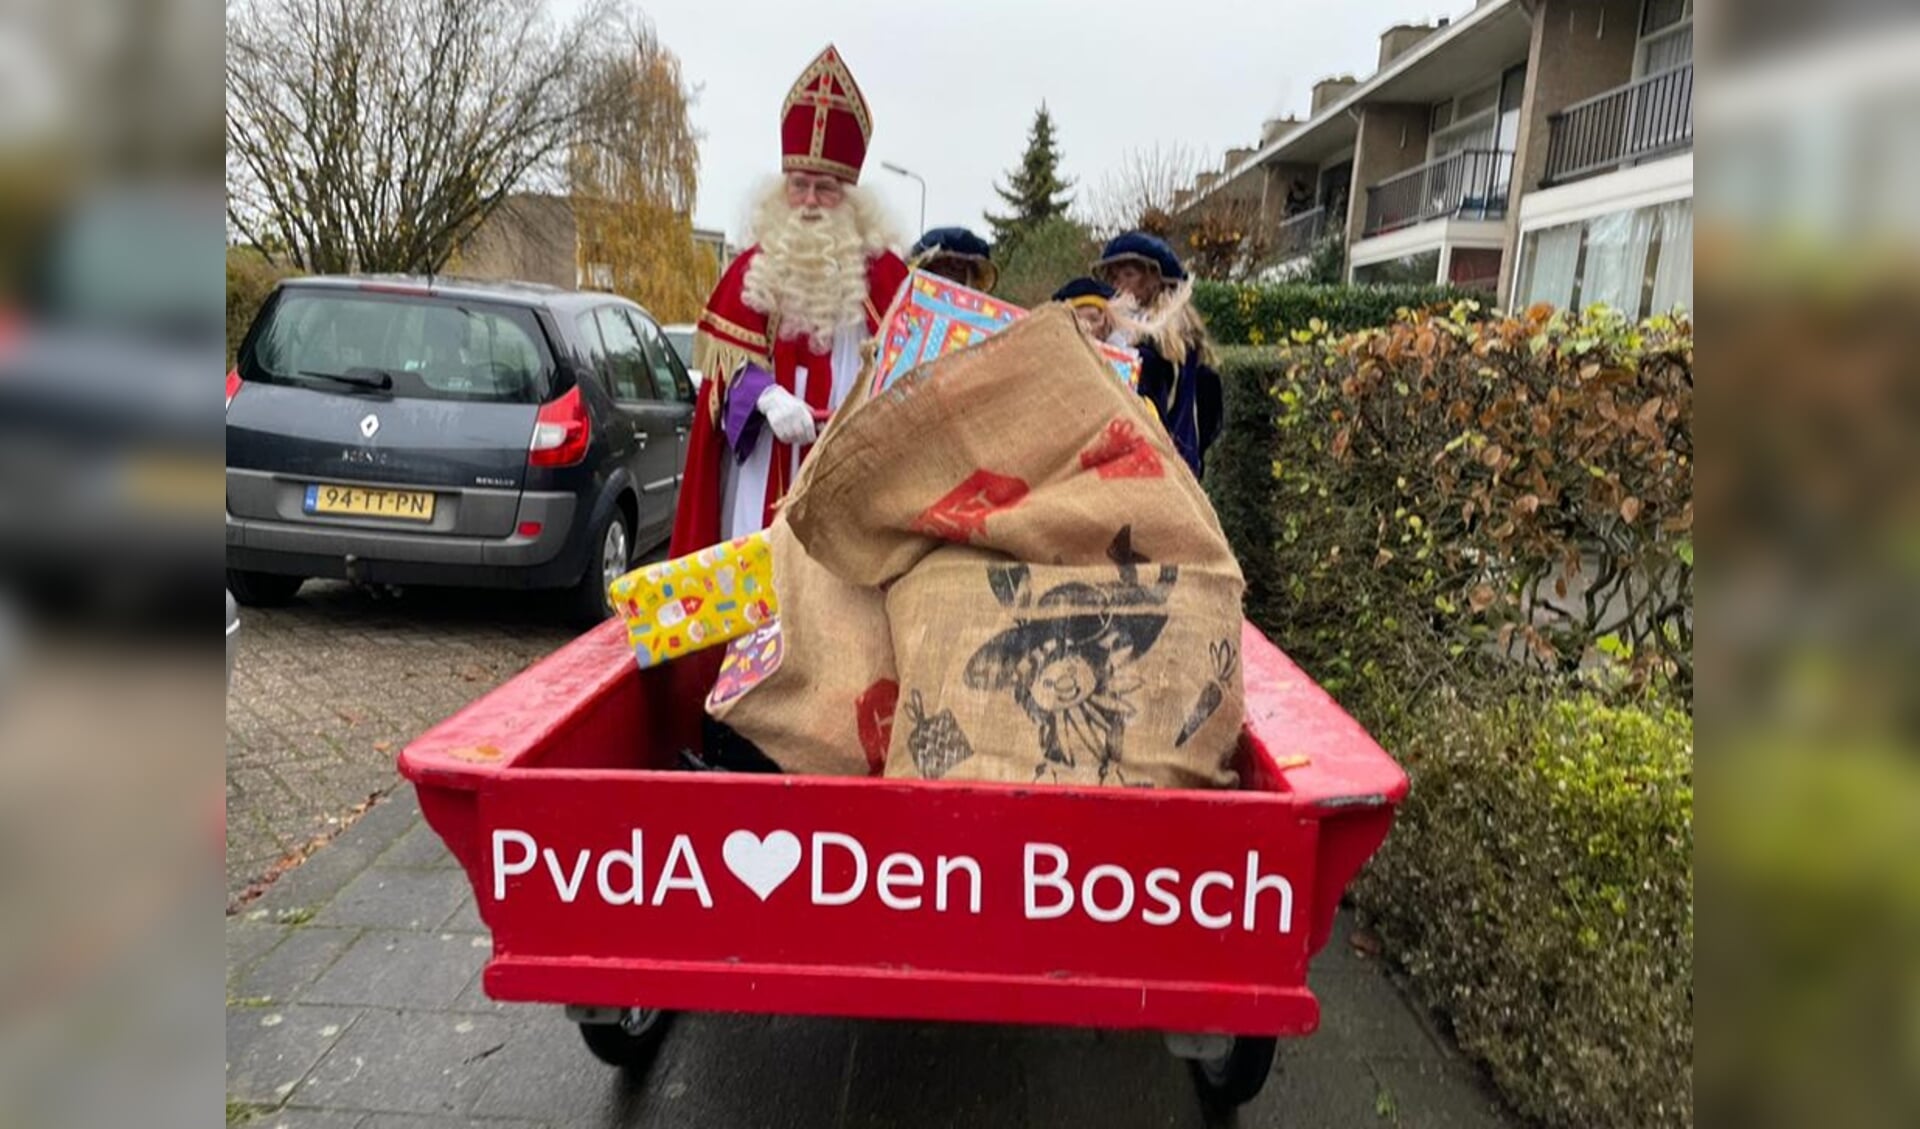 Hulppieten van de PvdA Den Bosch brengen vandaag cadeautjes bij gezinnen waar de schoorsteen dit jaar wat minder rookt.